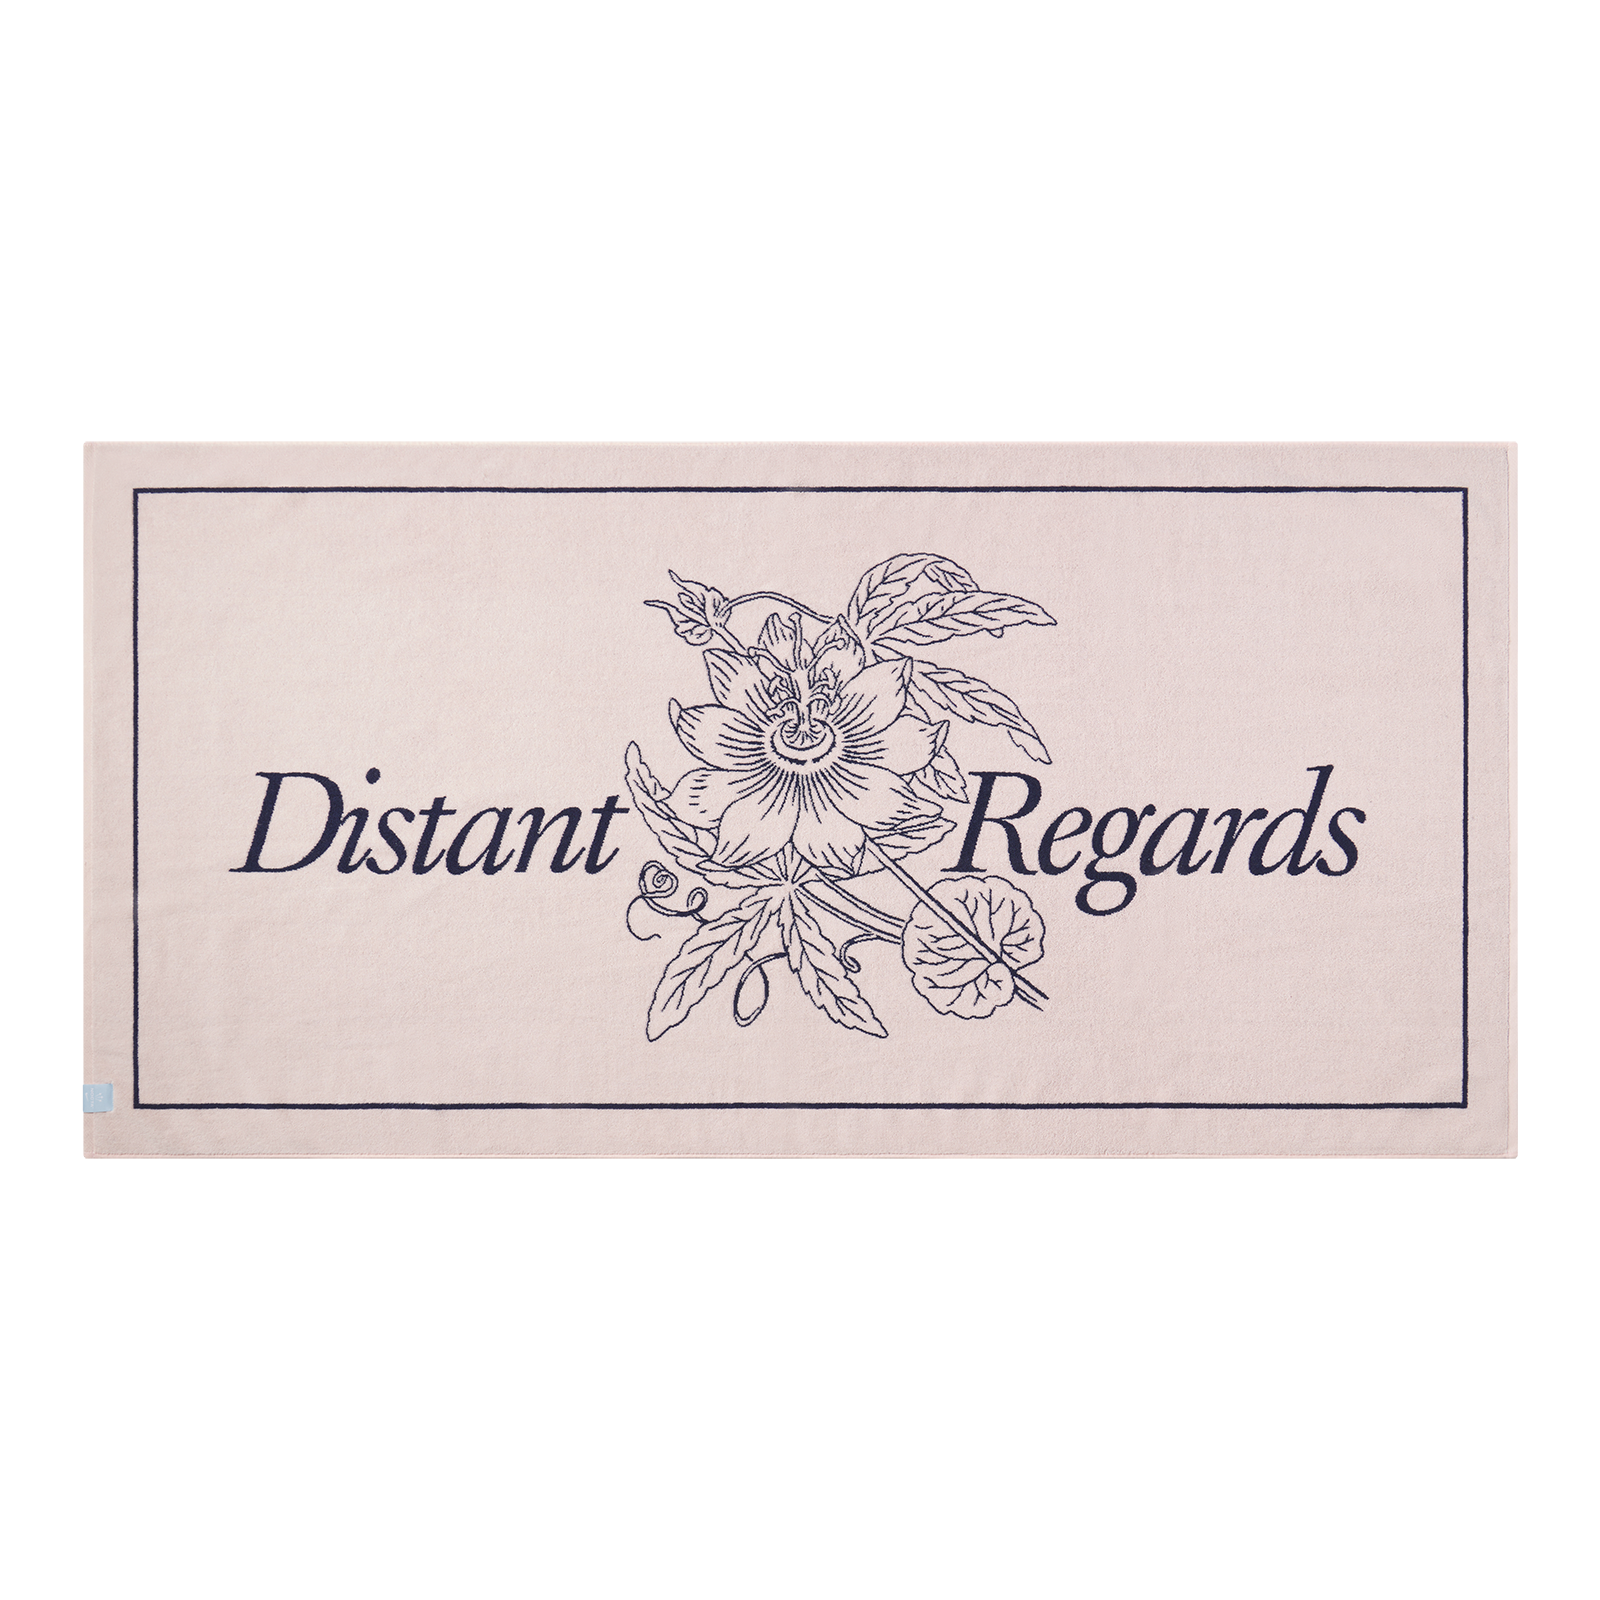 Distant Regards Towel - IMAGE 1